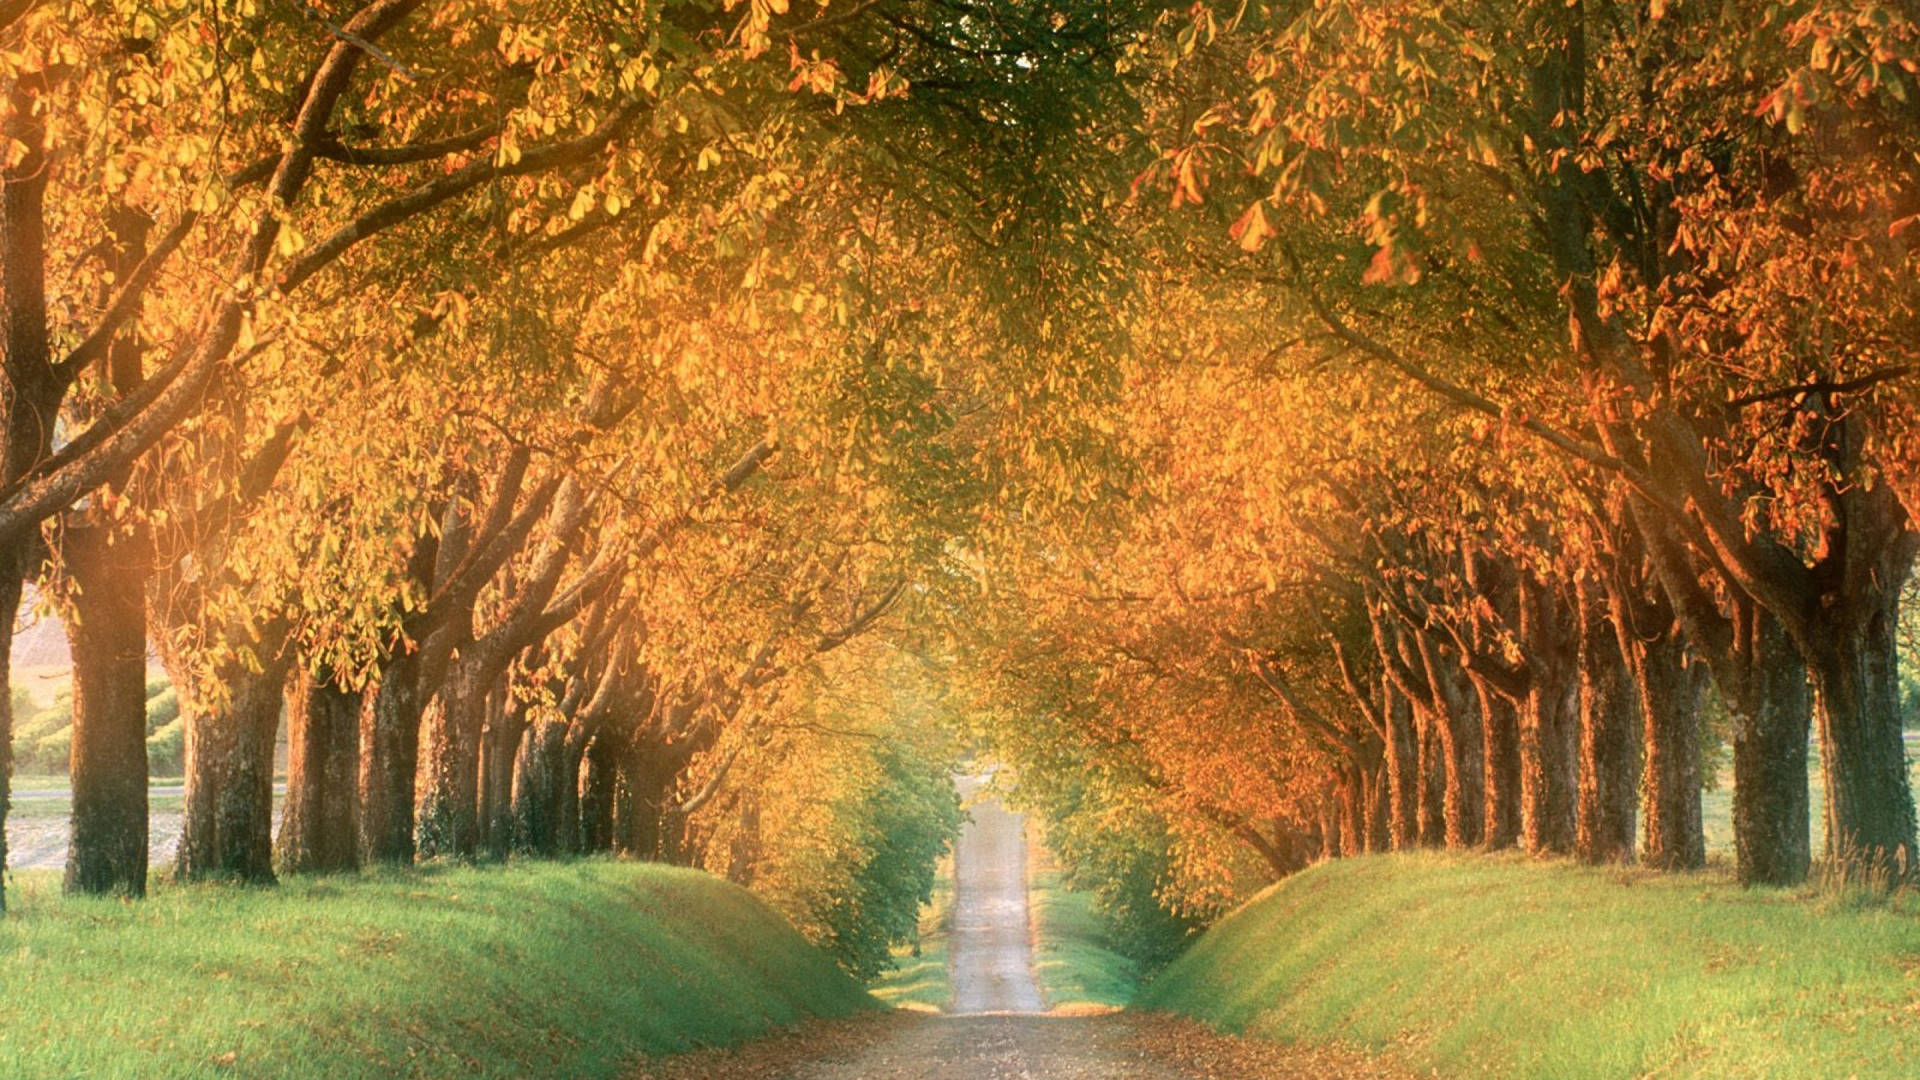 Autumn Tree Tunnel Painting Vermont Usa